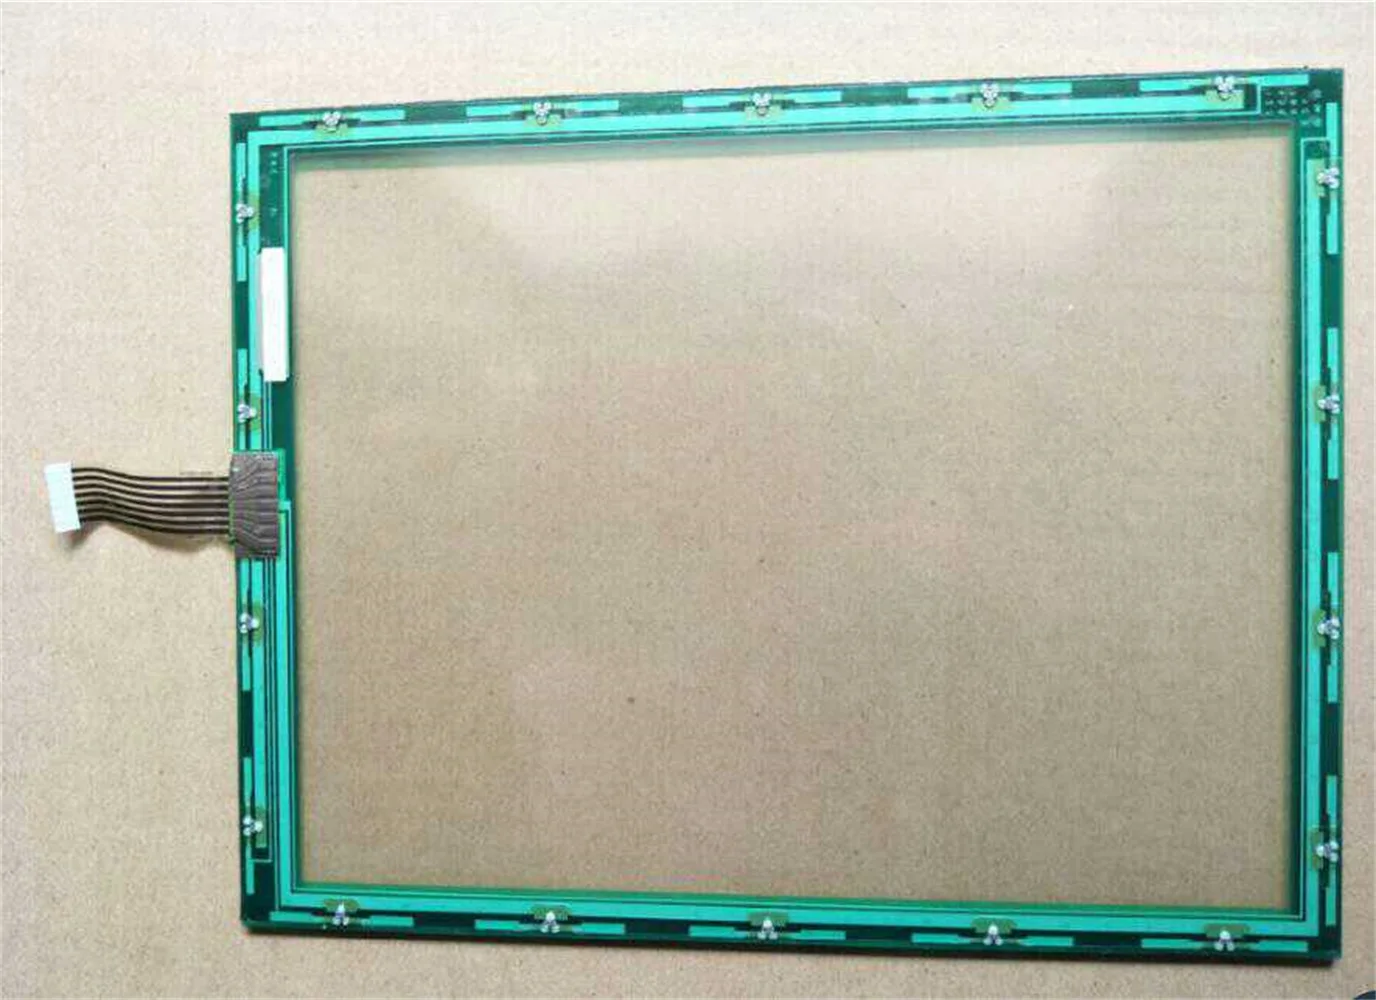 

N010-0551-T622 сенсорный экран только для сенсорной панели или стекла